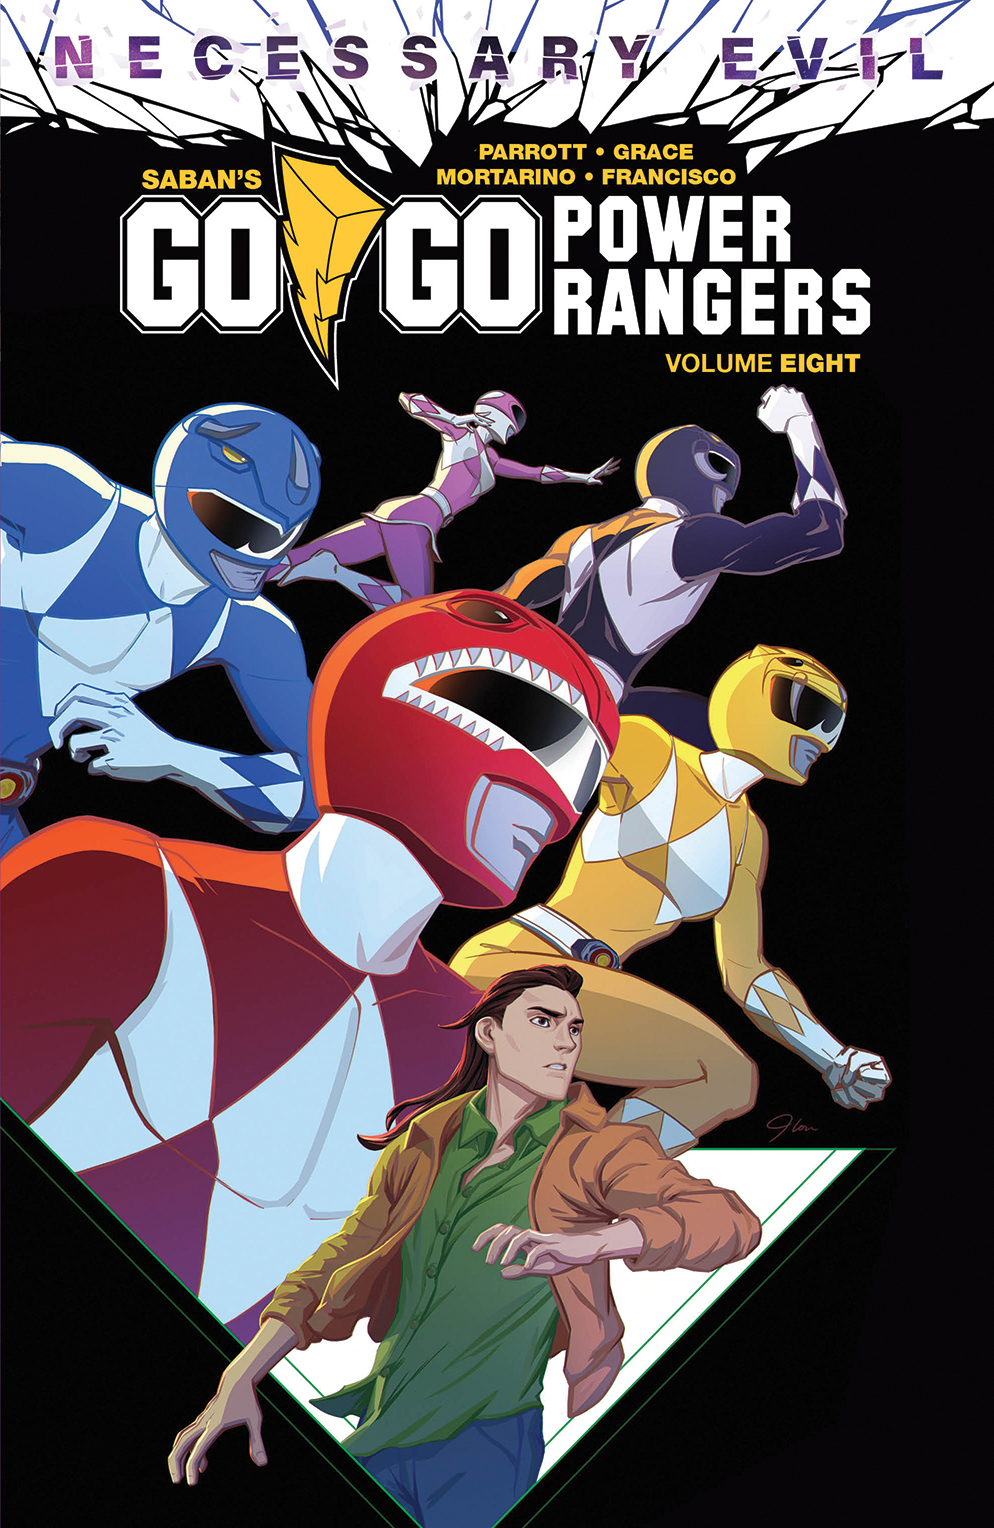 Go Go Power Rangers Graphic Novel Volume 8